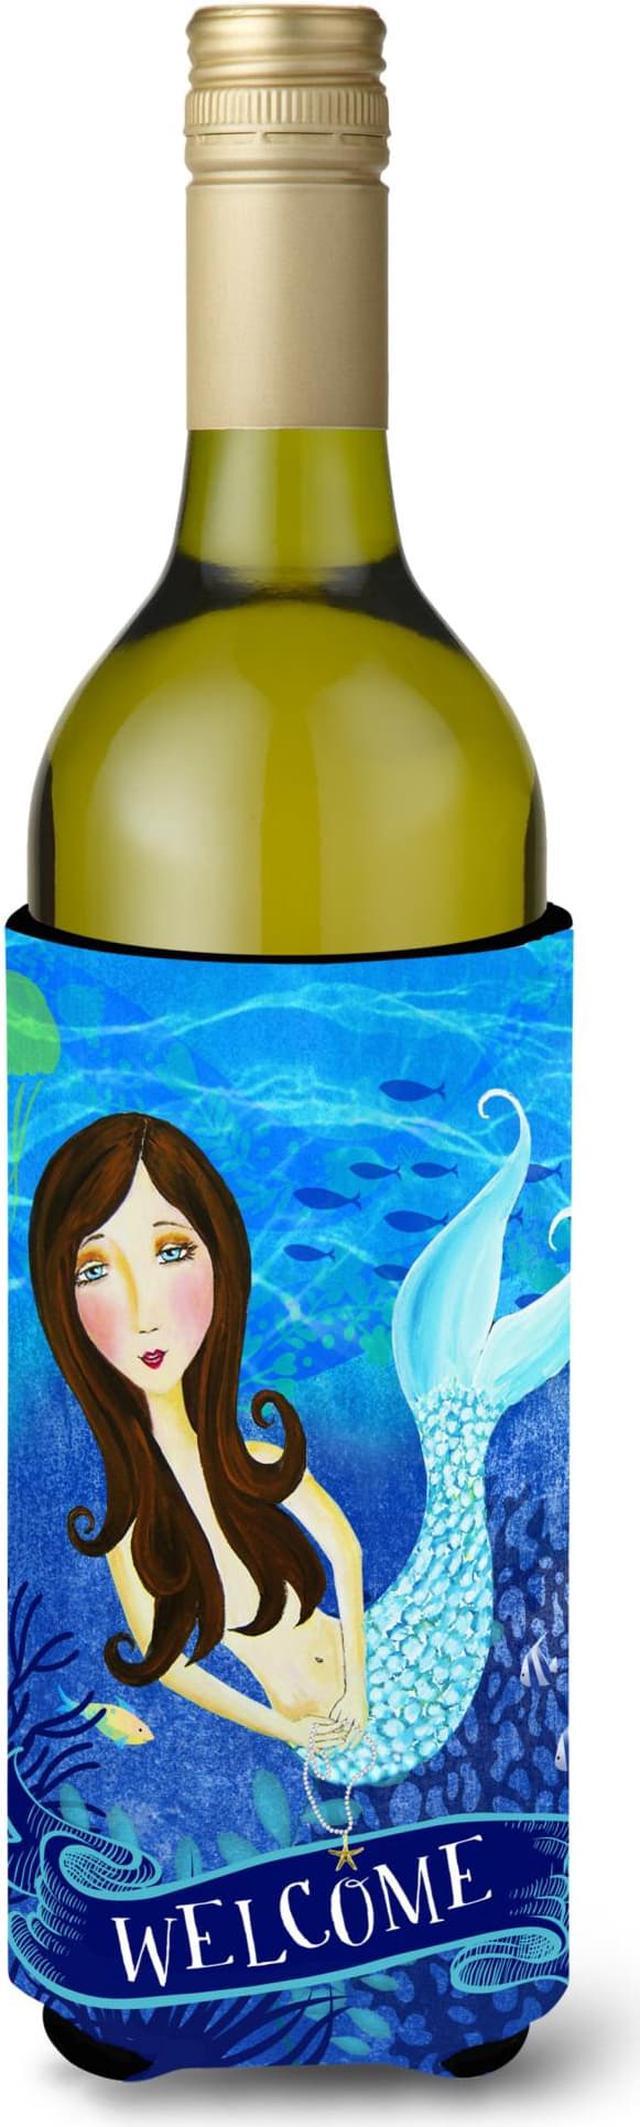 Caroline's Treasures Glasses Wine Bottle Koozie Hugger, 750ml, Multicolor